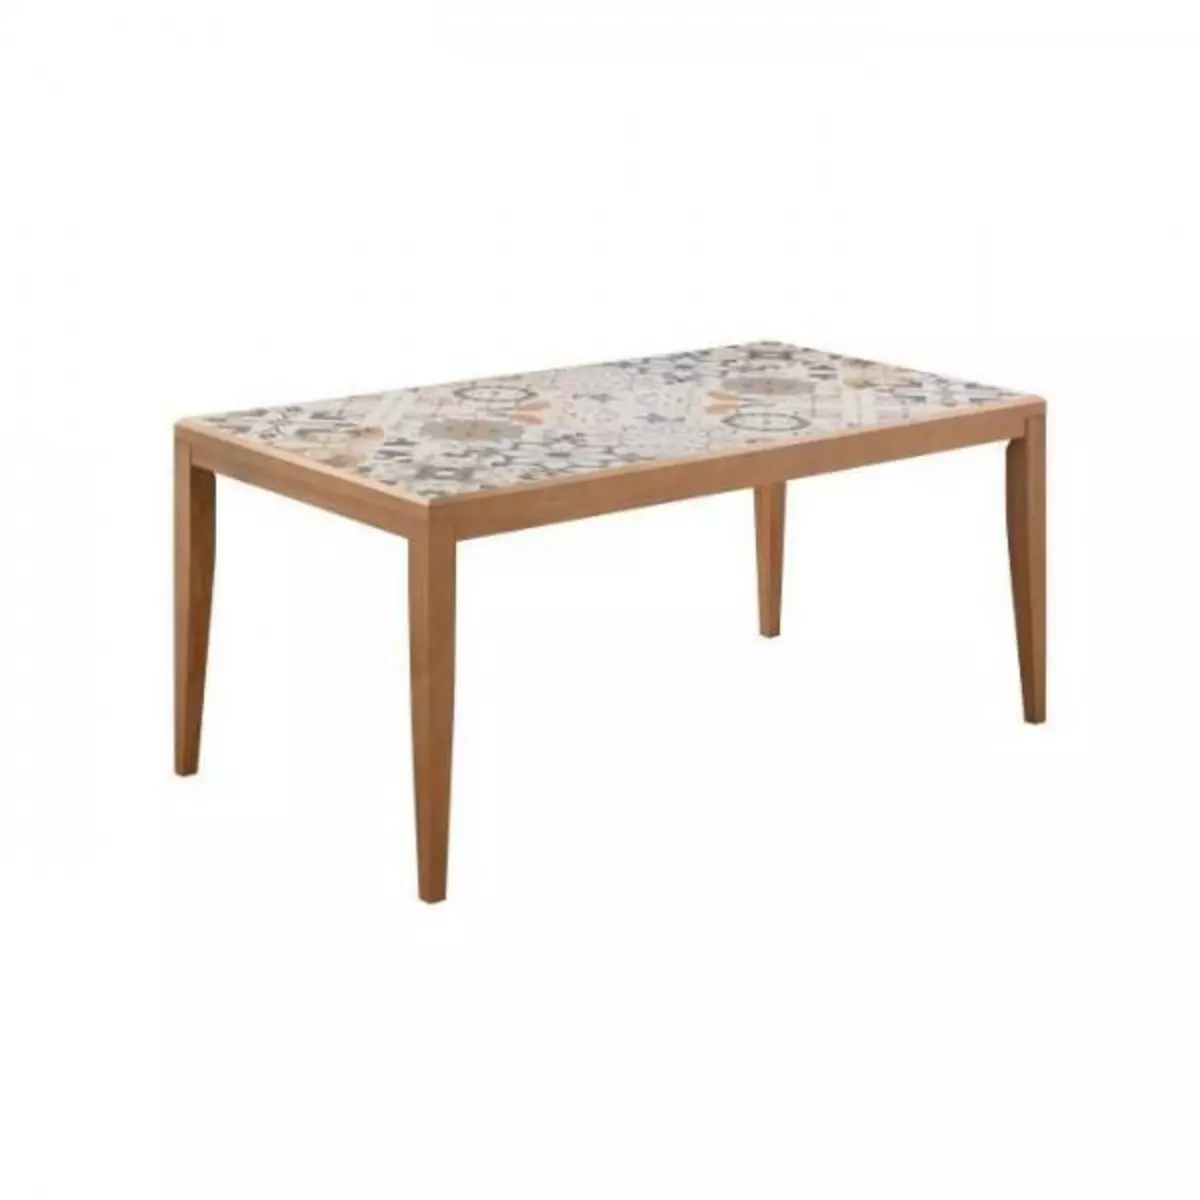 MARKET24 Table de jardin en bois - 162 cm - Bois de pin du Chili + carrelage céramique mosaique